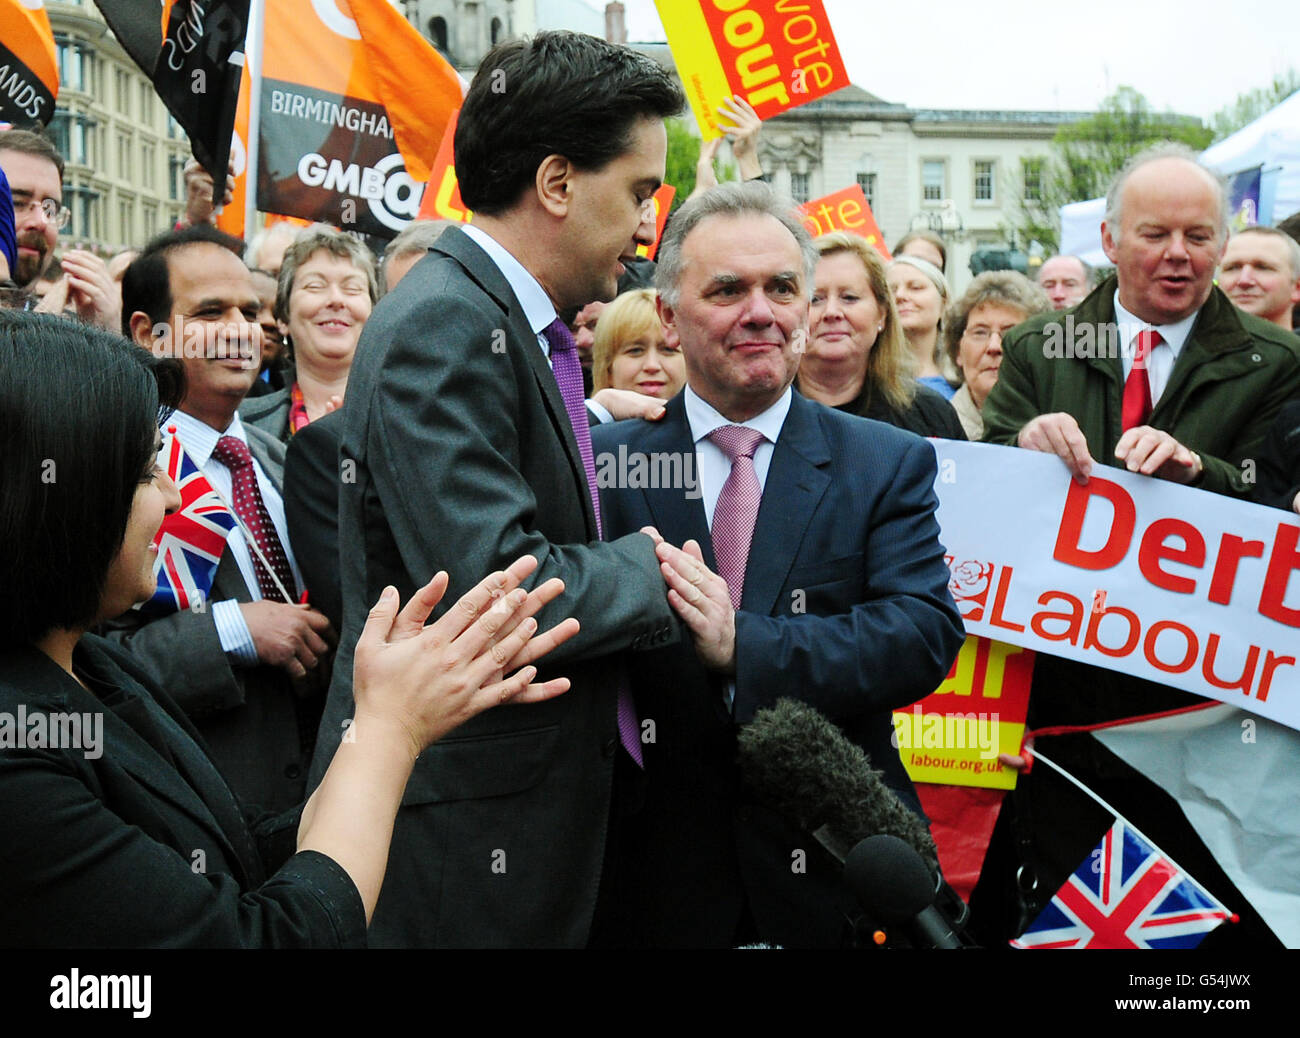 El líder laborista Ed Miliband felicita al líder del Grupo laborista Sir Albert Bore (derecha) en Victoria Square, Birmingham, después de que el Partido Laborista haya logrado avances significativos en las elecciones locales de mitad de período. Foto de stock